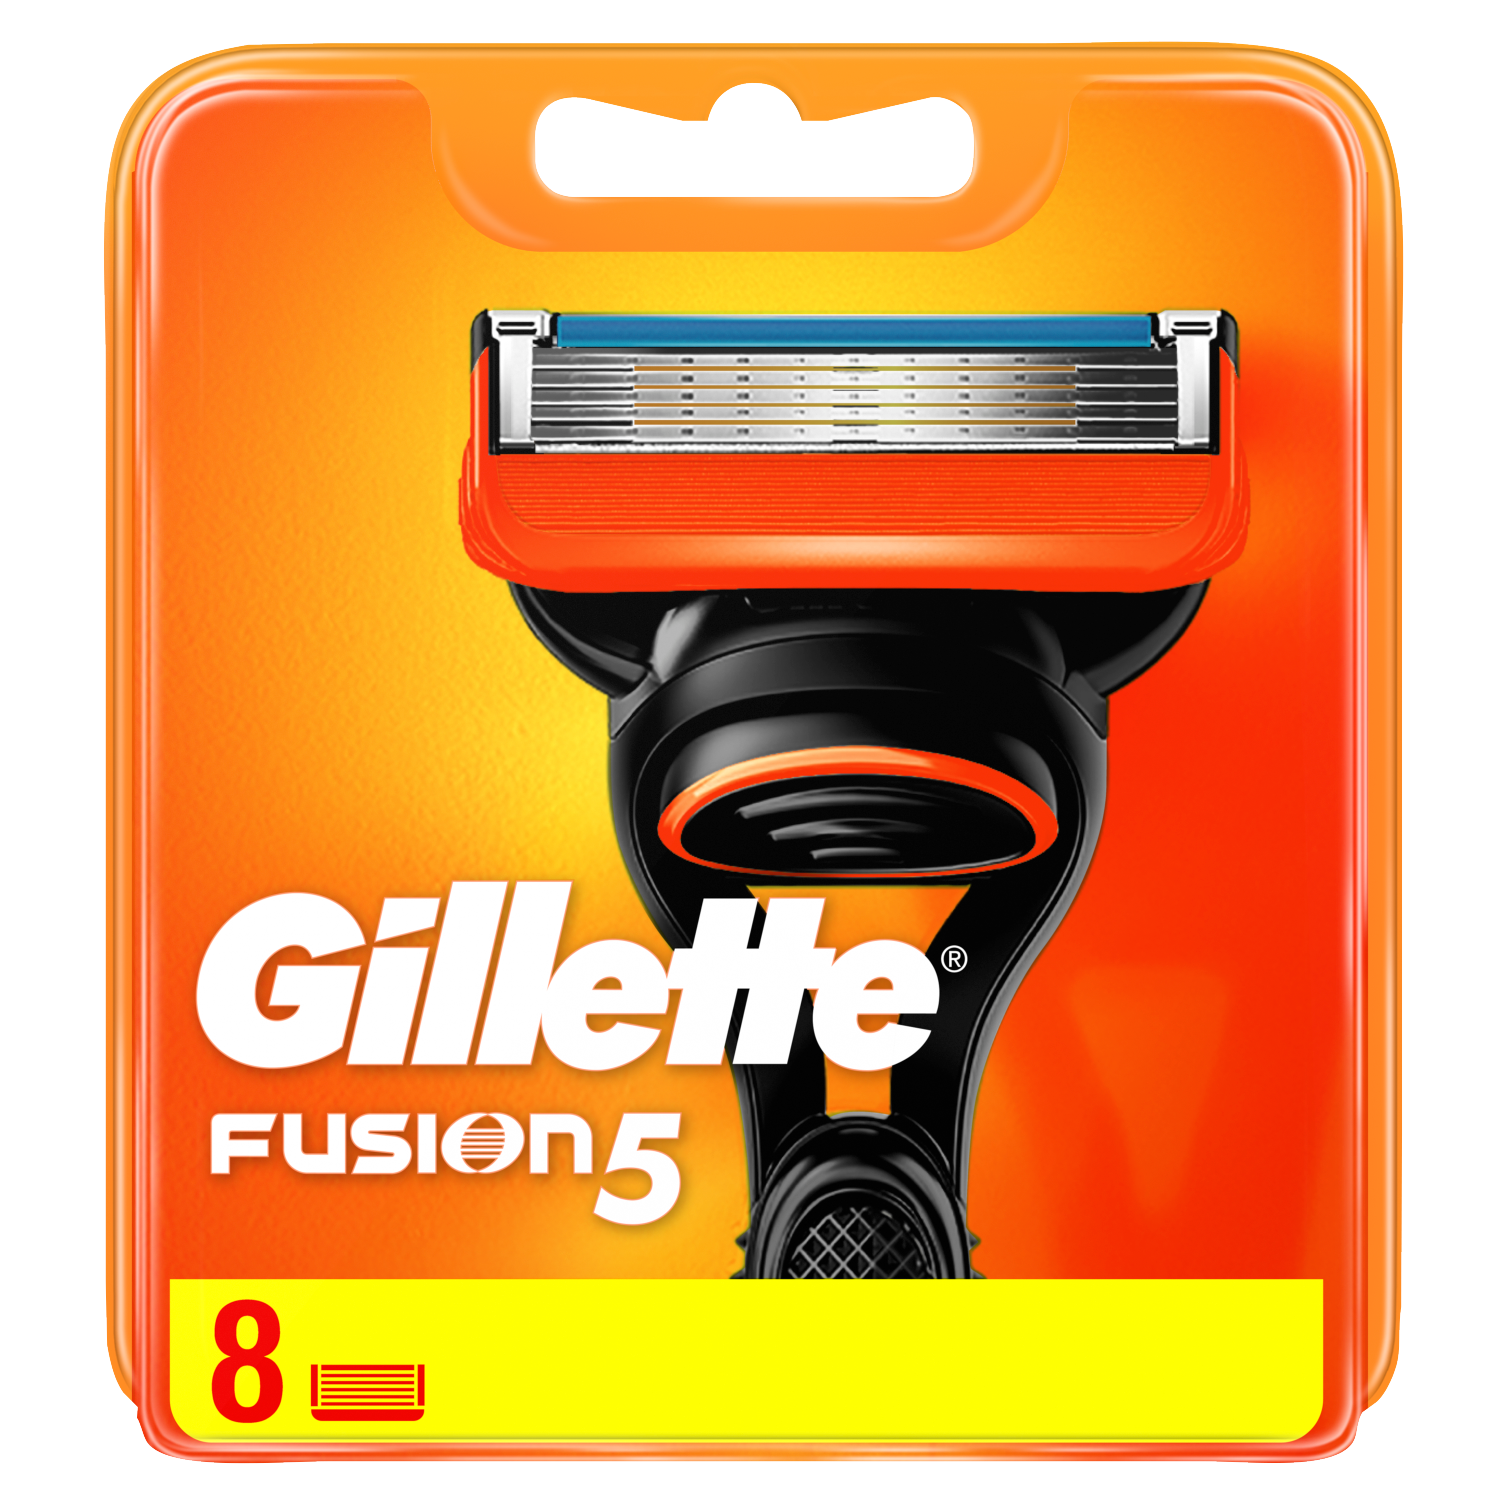 Gillette Fusion5 wkłady do maszynki do golenia, 8 szt./1 opak. | hebe.pl